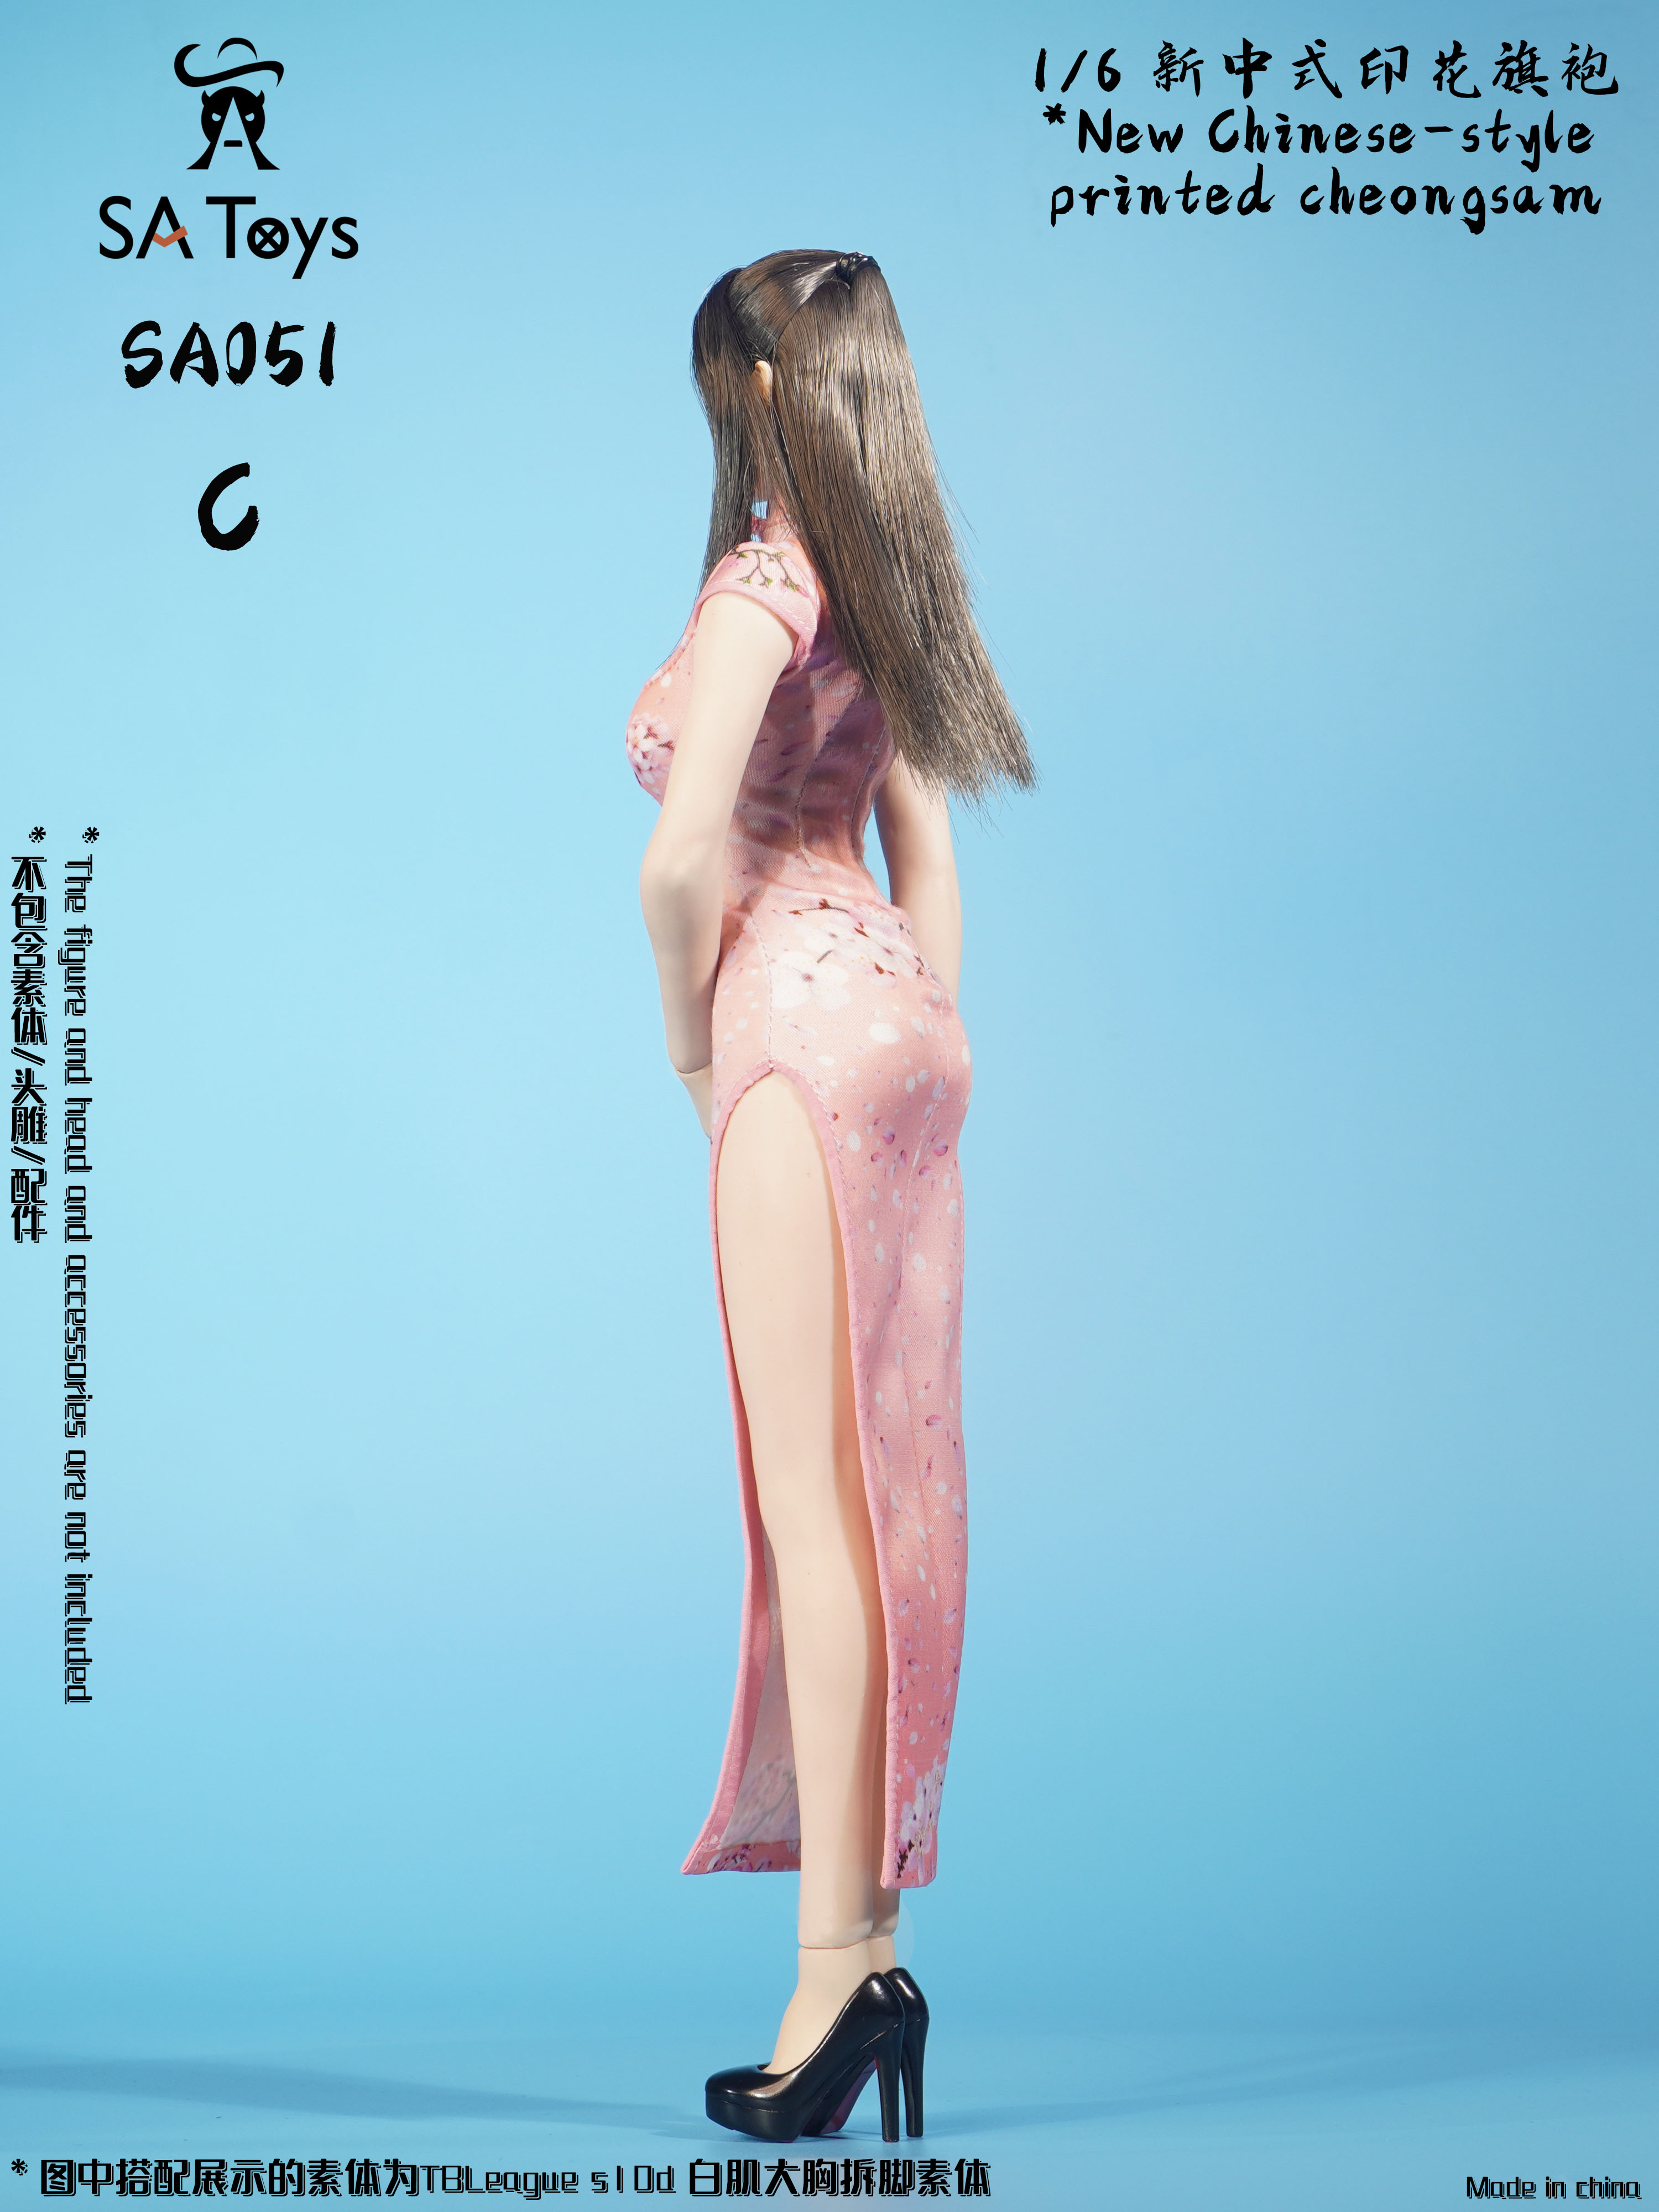 dress - NEW PRODUCT: SA Toys - New Chinese-style printed cheongsam (SA051 A/B/C) 09115